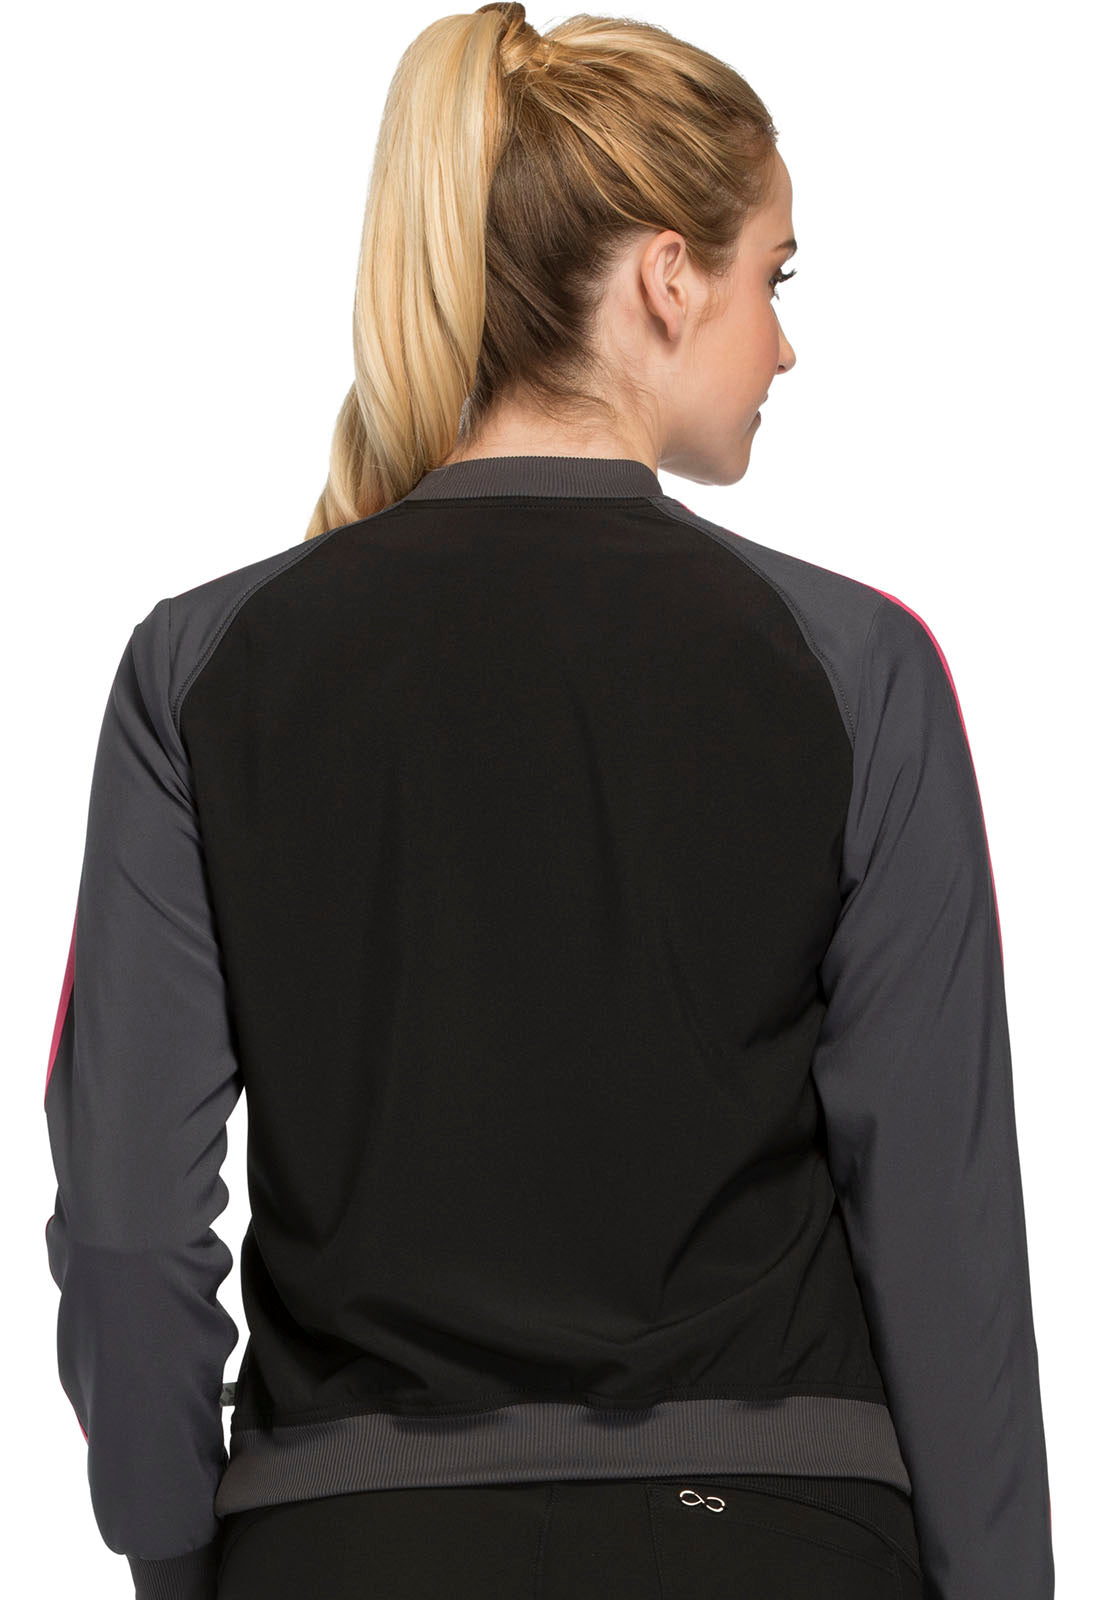 Zip Front Warm-up Jacket in Black